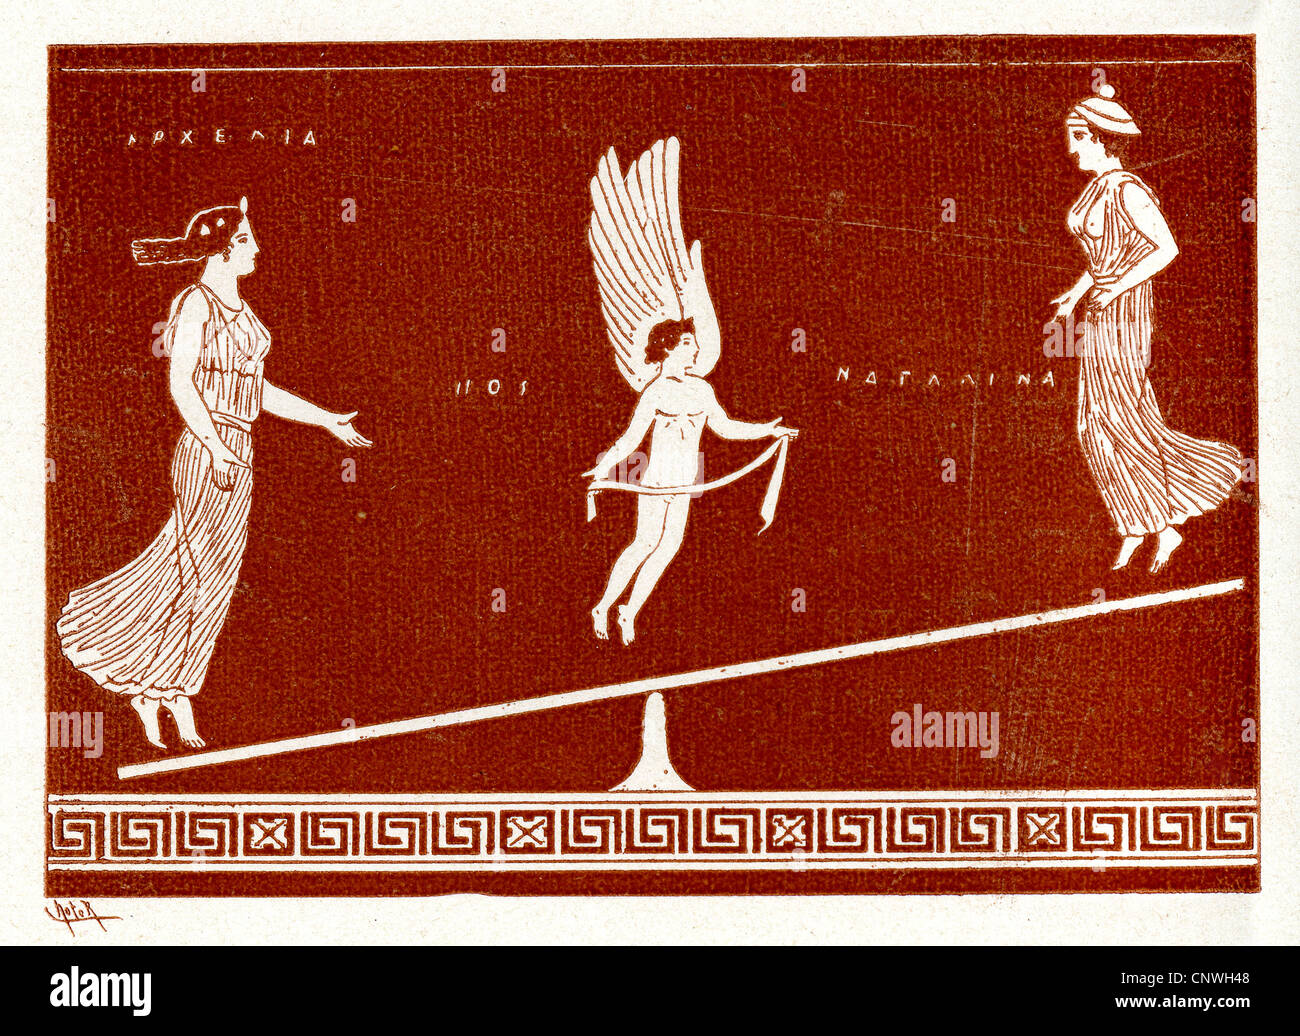 Un winged figure au centre d'un équilibre entre les deux femmes de la Grèce antique Banque D'Images